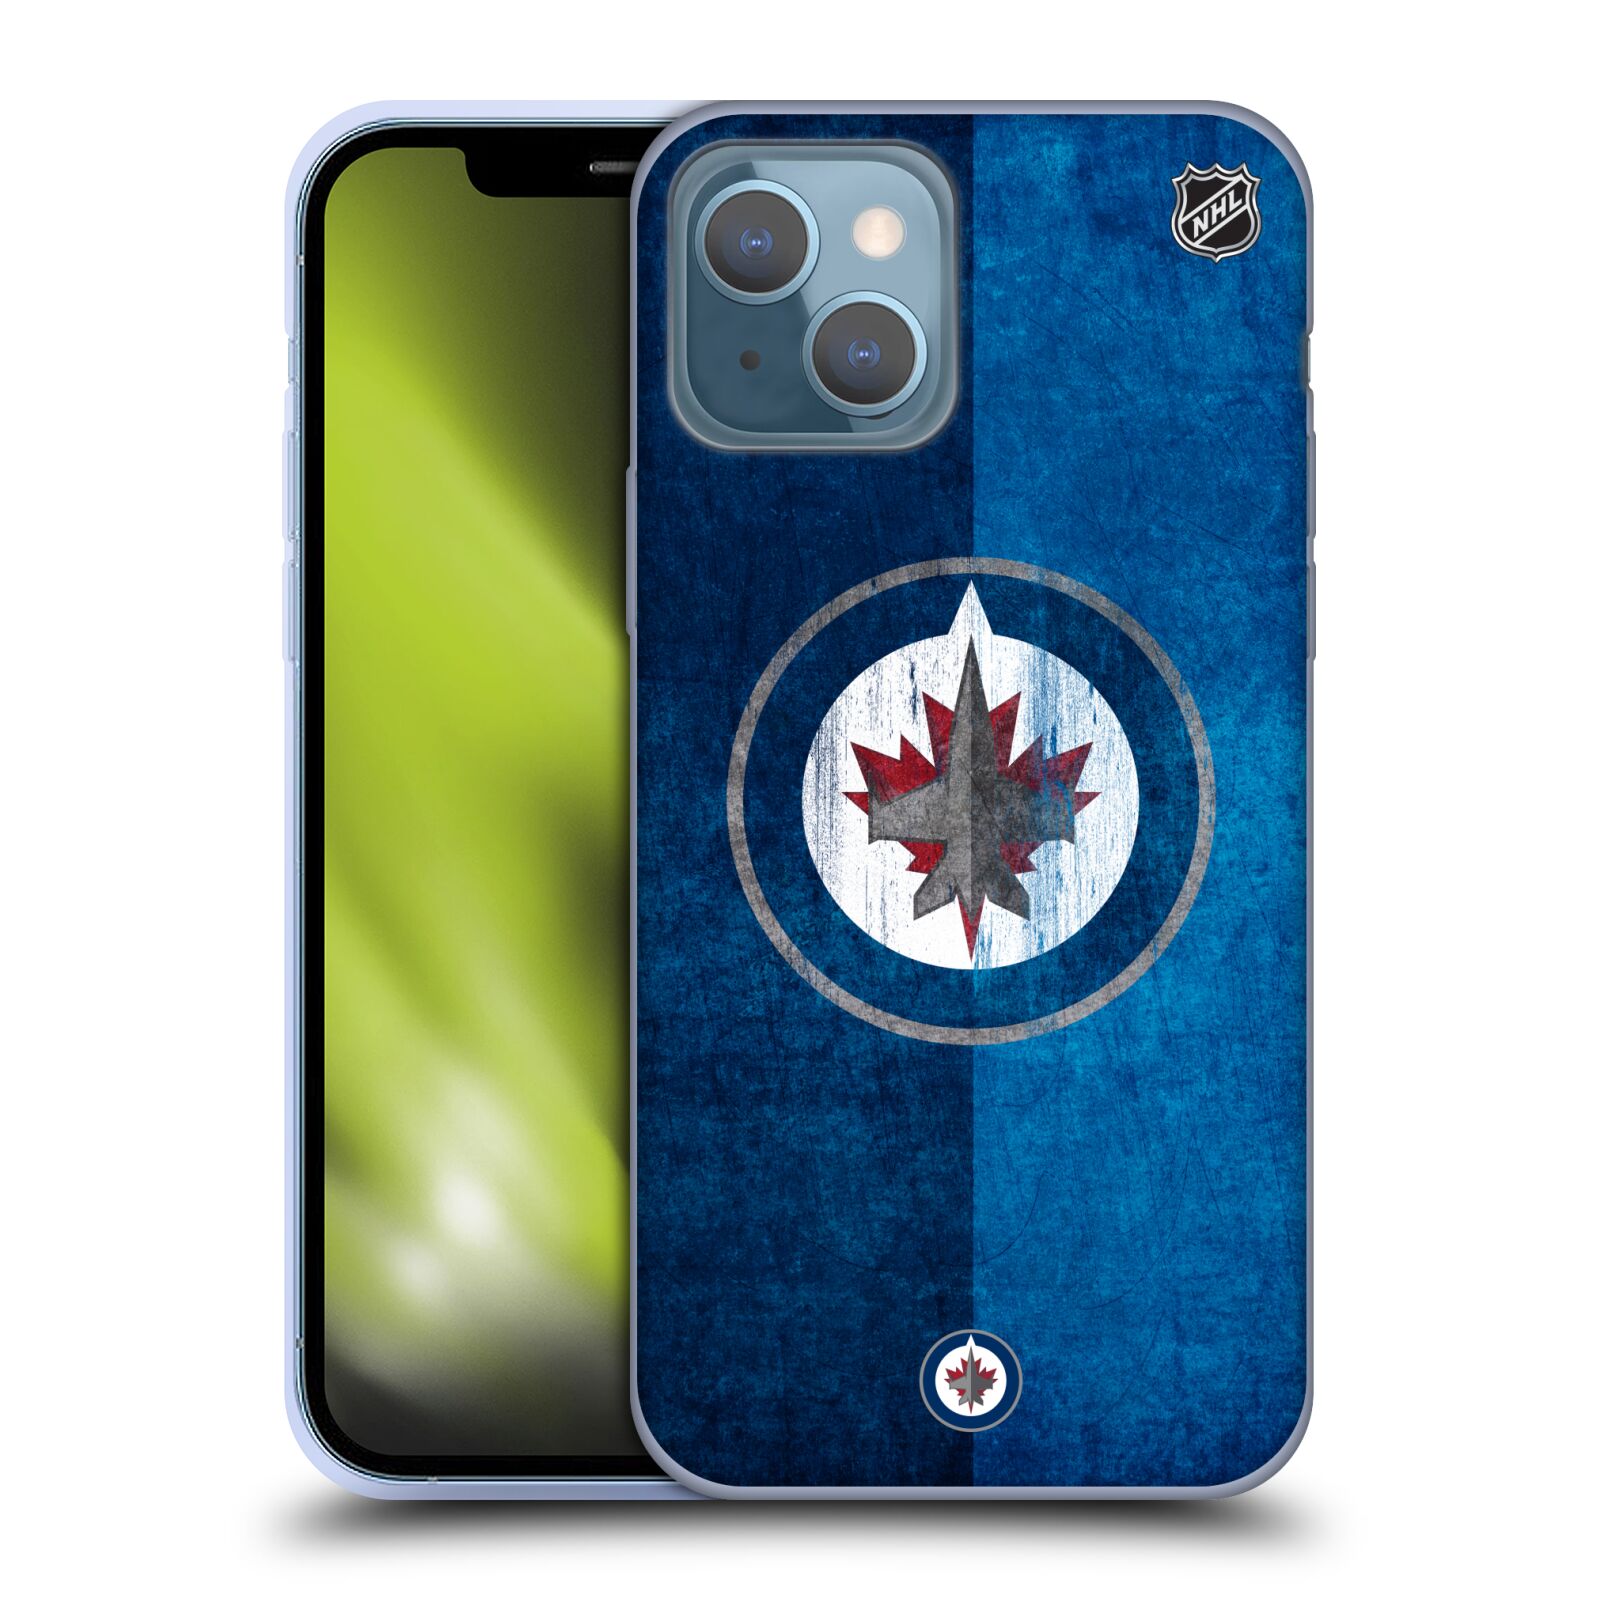 Silikonové pouzdro na mobil Apple iPhone 13 - NHL - Půlené logo Winnipeg Jets (Silikonový kryt, obal, pouzdro na mobilní telefon Apple iPhone 13 s licencovaným motivem NHL - Půlené logo Winnipeg Jets)